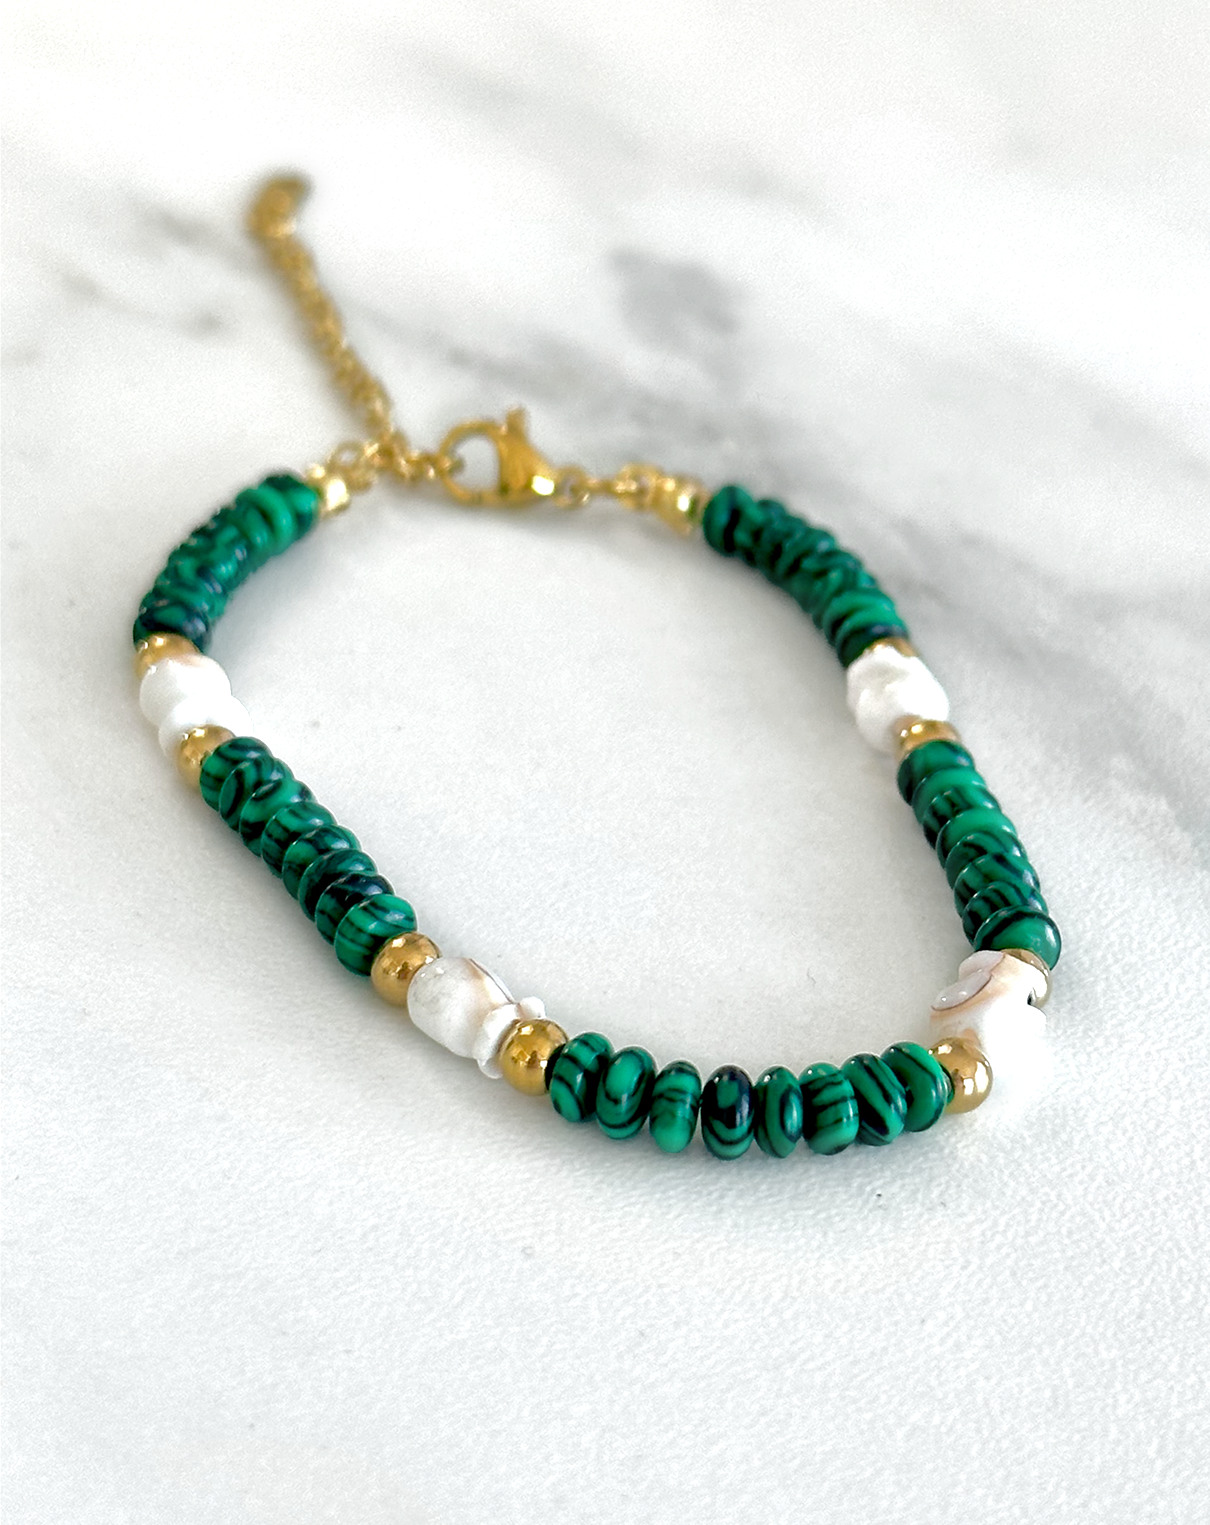 Bracelet de perles vertes, blanches et dorées